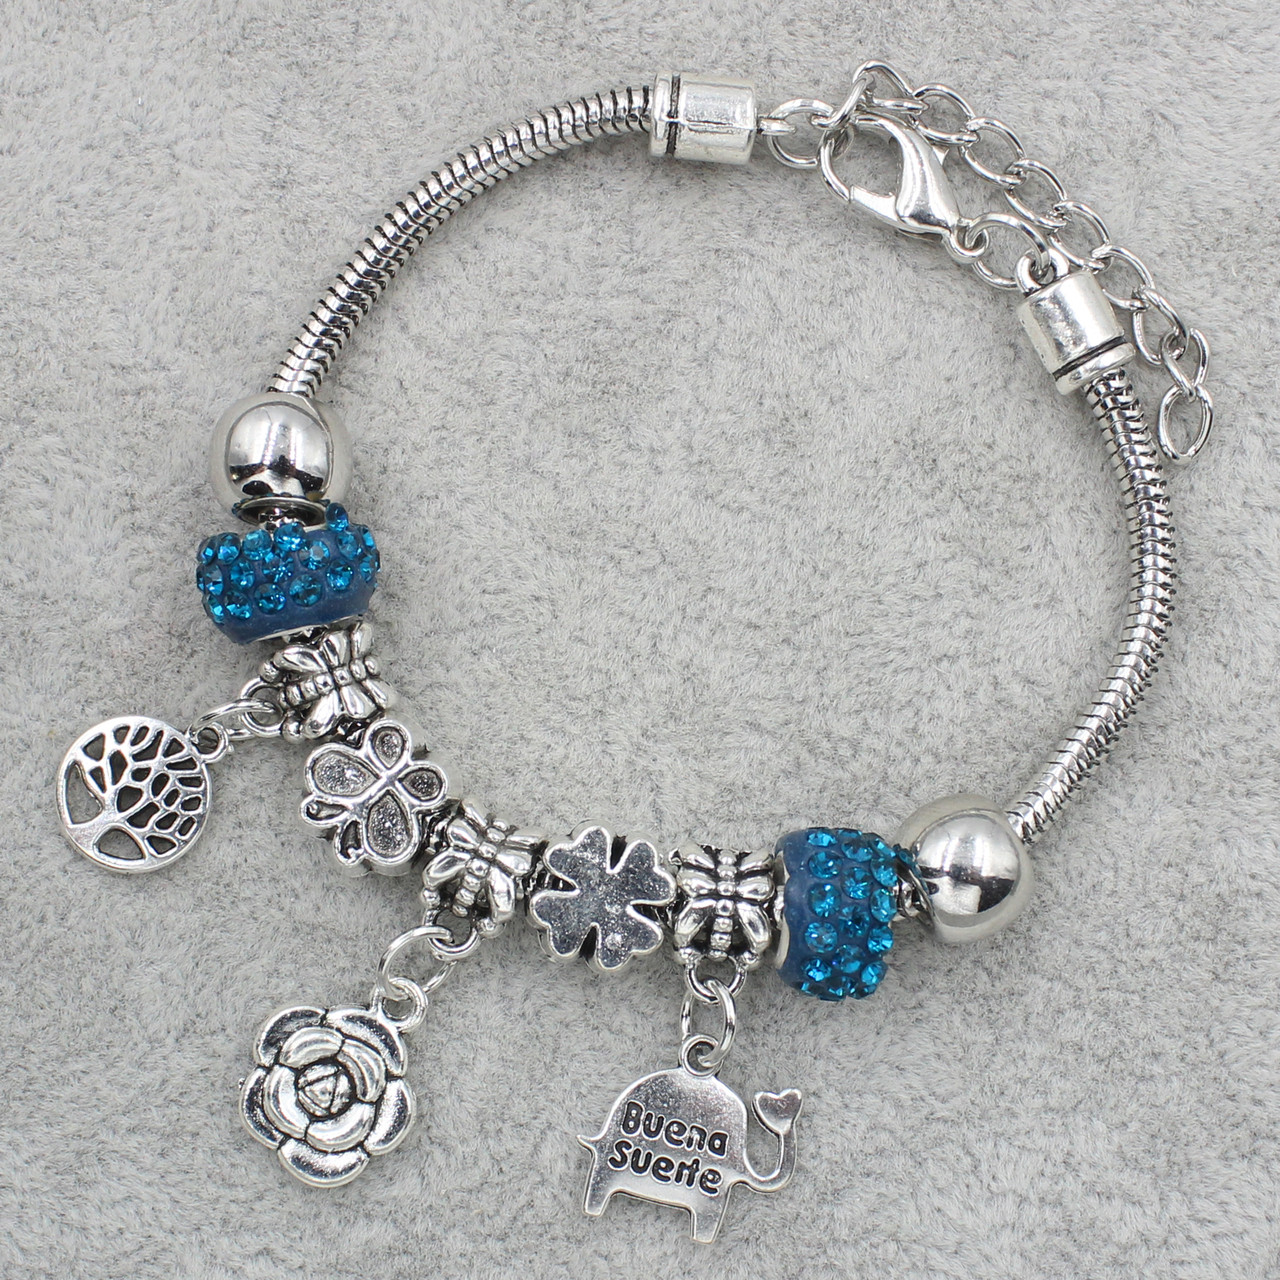 Pandora браслет серебристого цвета цветочек с синими шармами в стразах 9 штук длина браслета 22 см ширина 3 мм